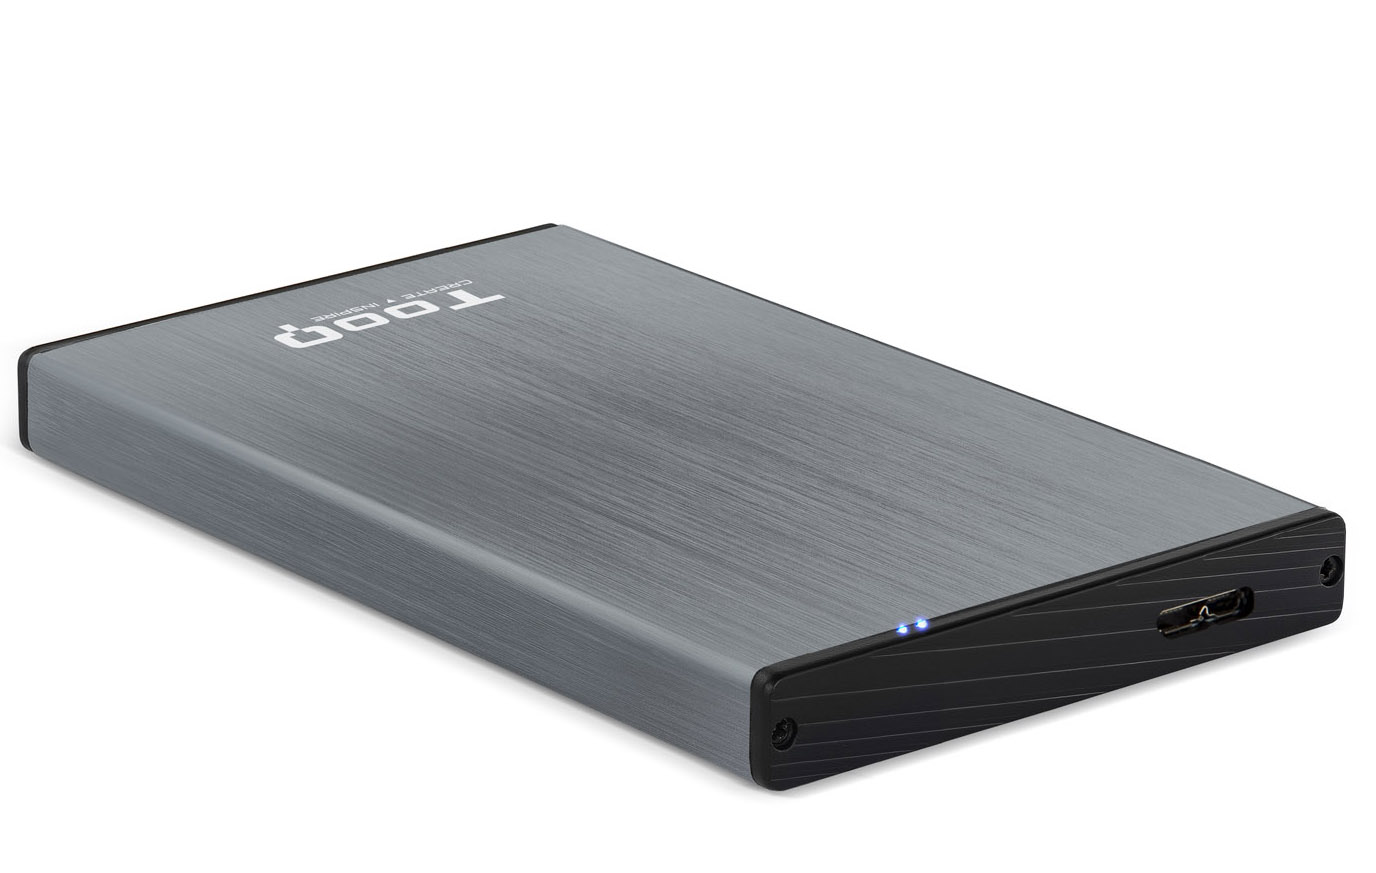 Tooq - Caixa HDD Tooq 2.5" SATA (9,5mm) USB 3.0/3.1 Gen 1 Cinza Metalizado